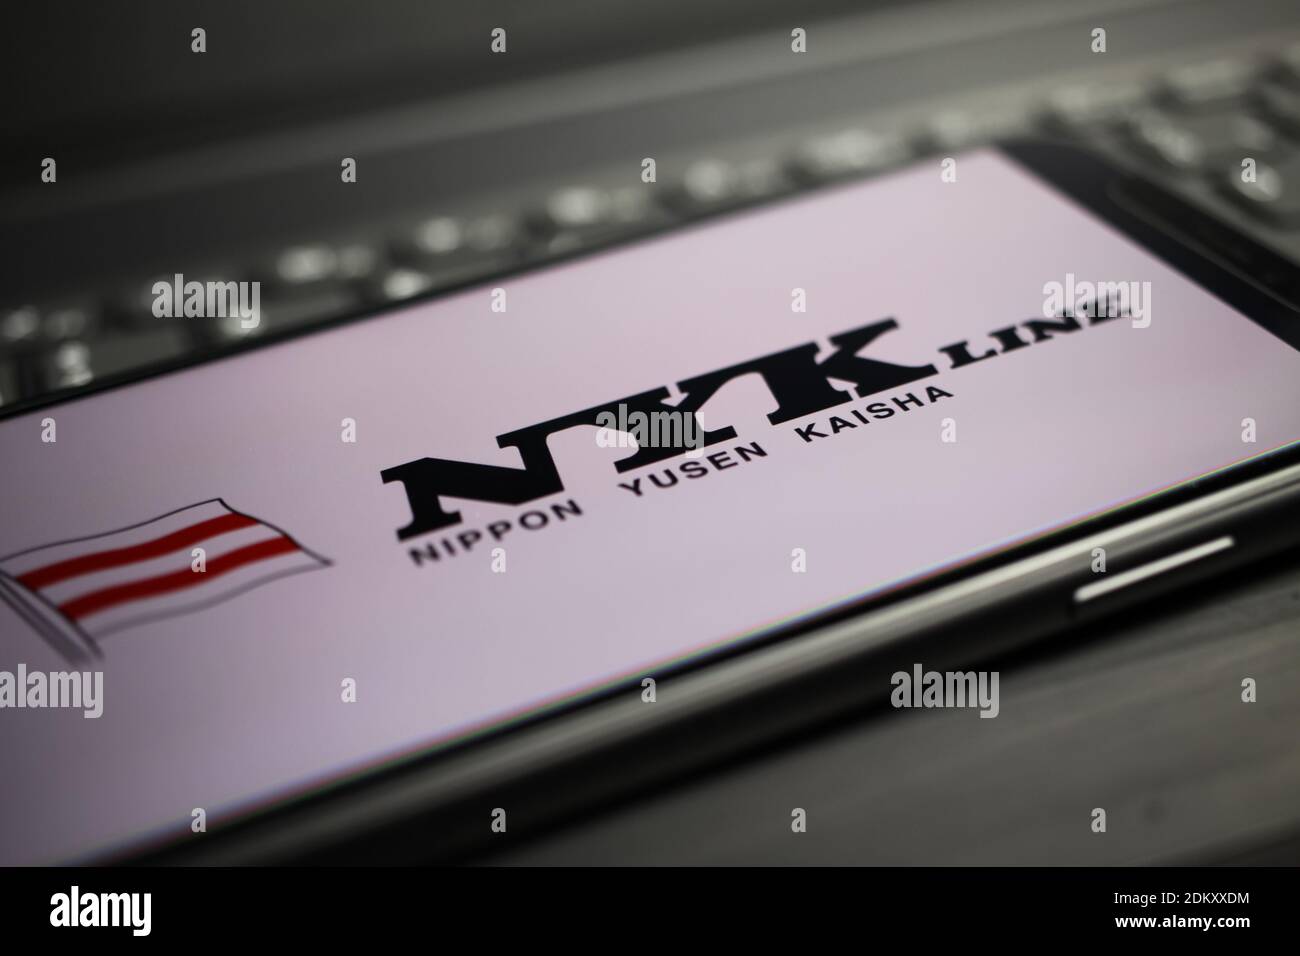 Viersen, Allemagne - mai 9. 2020: Gros plan de l'affichage de téléphone mobile avec NYK nippon yusen kaisha logo de ligne lettrage sur le clavier d'ordinateur Banque D'Images